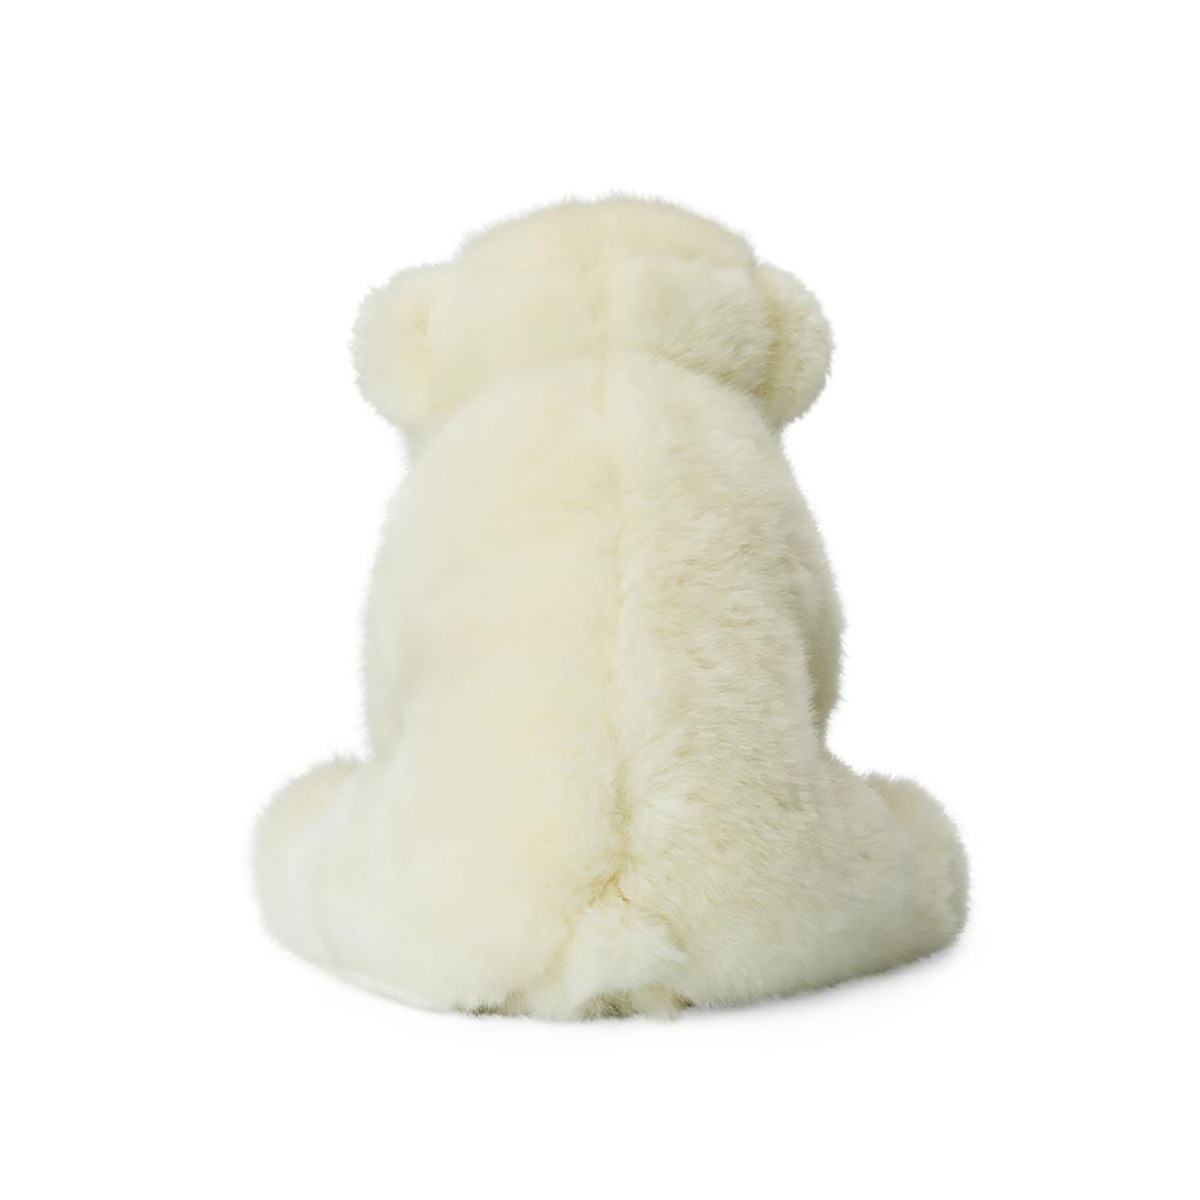 MY ANIMAL Plüschtier Eisbär (15cm) WWF